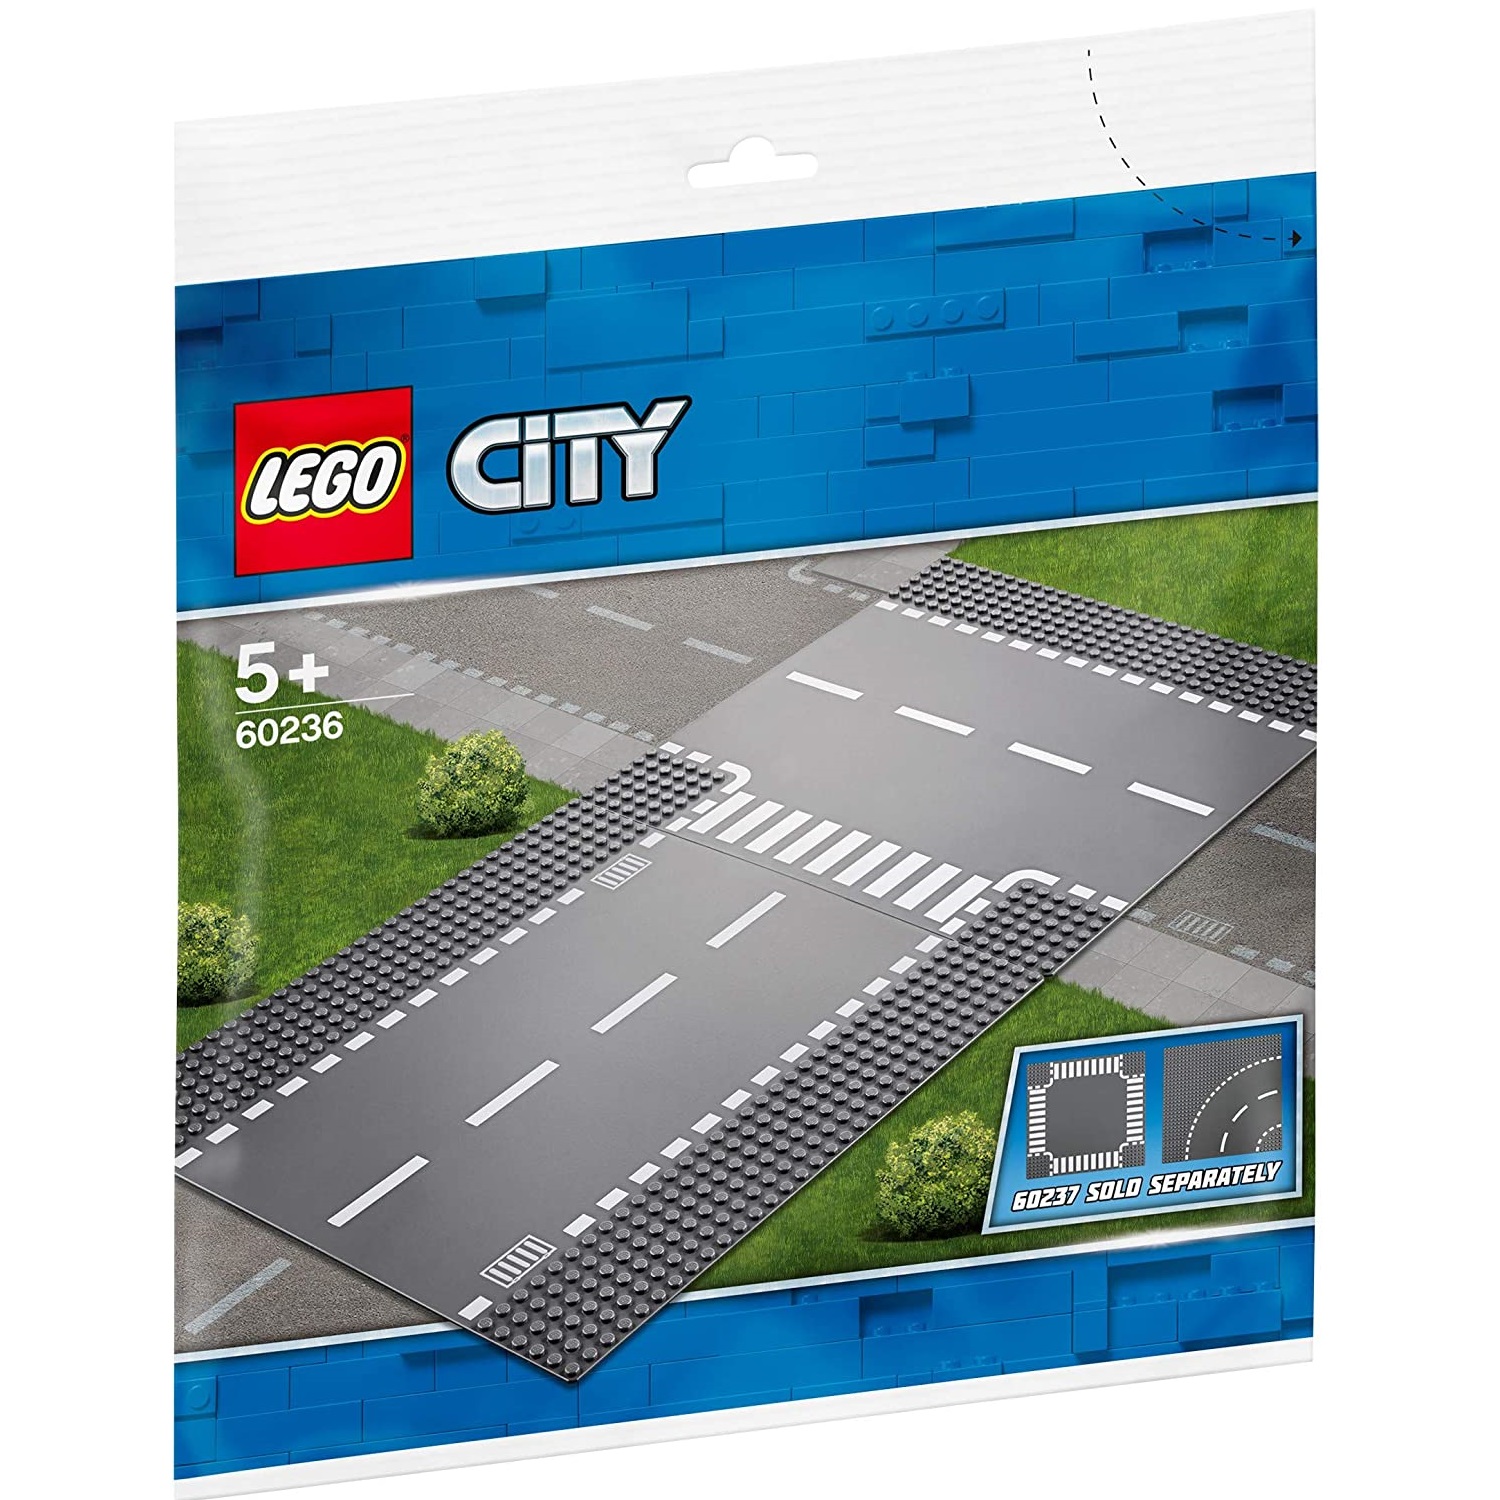 Intersectie Dreapta si in T, L60236, Lego City